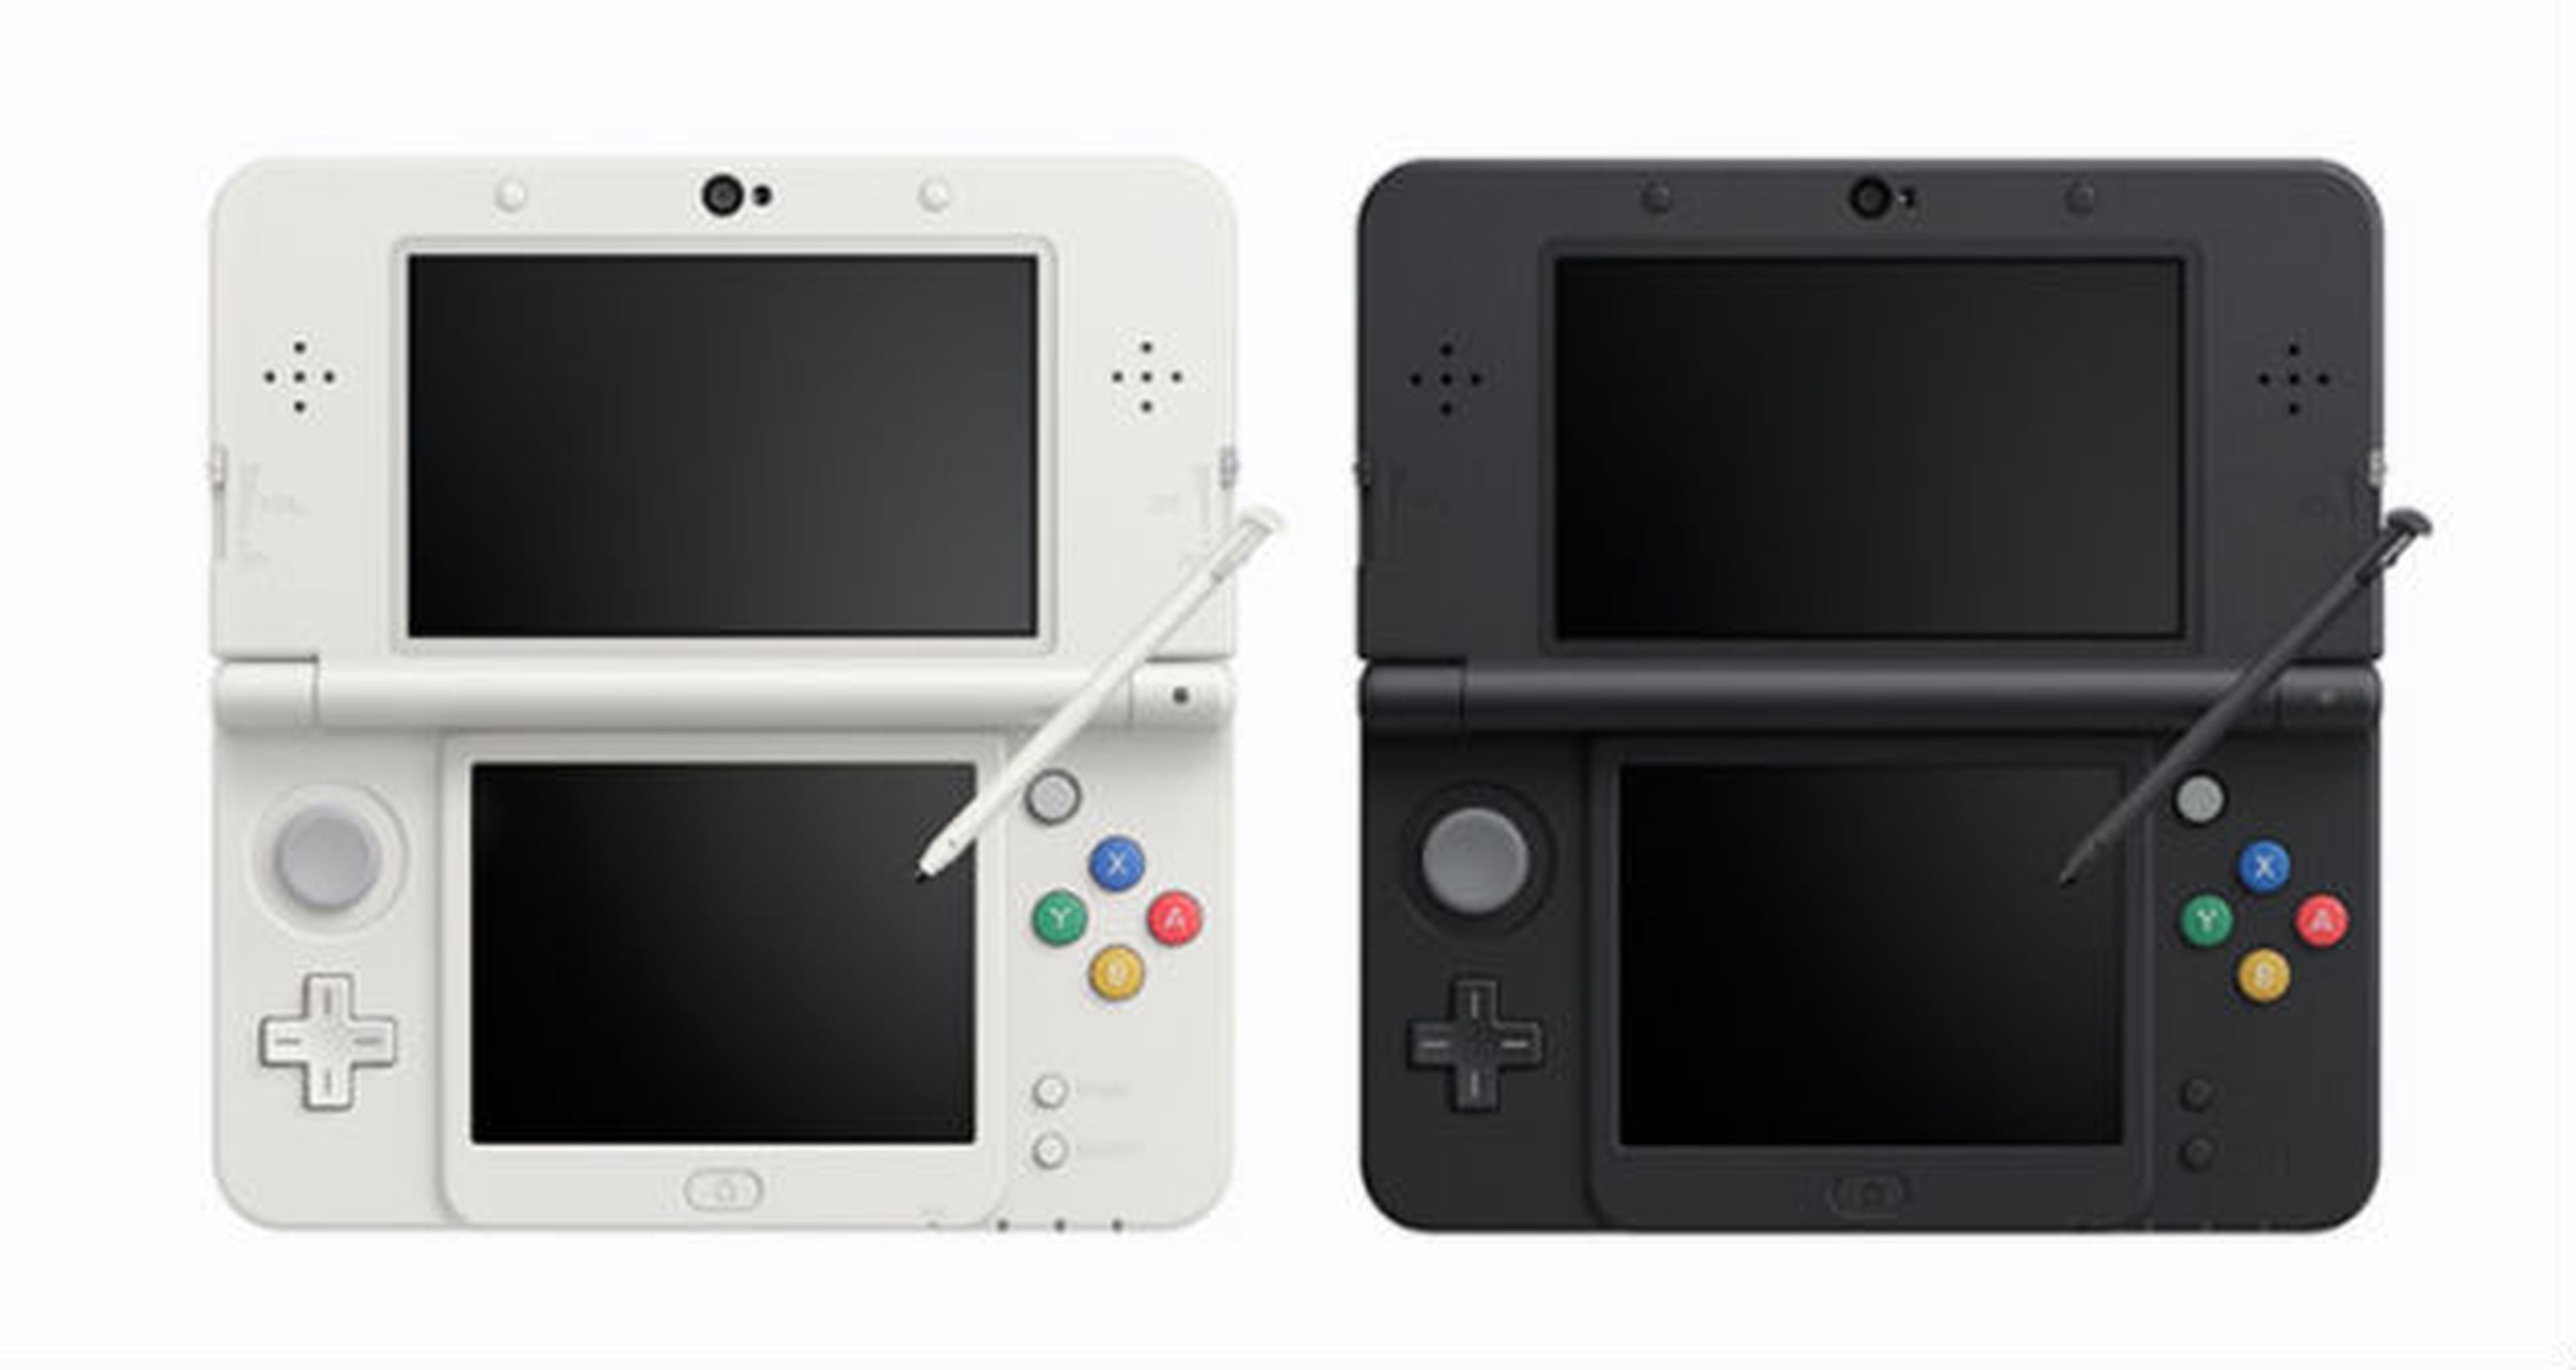 Japón is different: Wii U consola más vendida, PES 2014 lidera en software